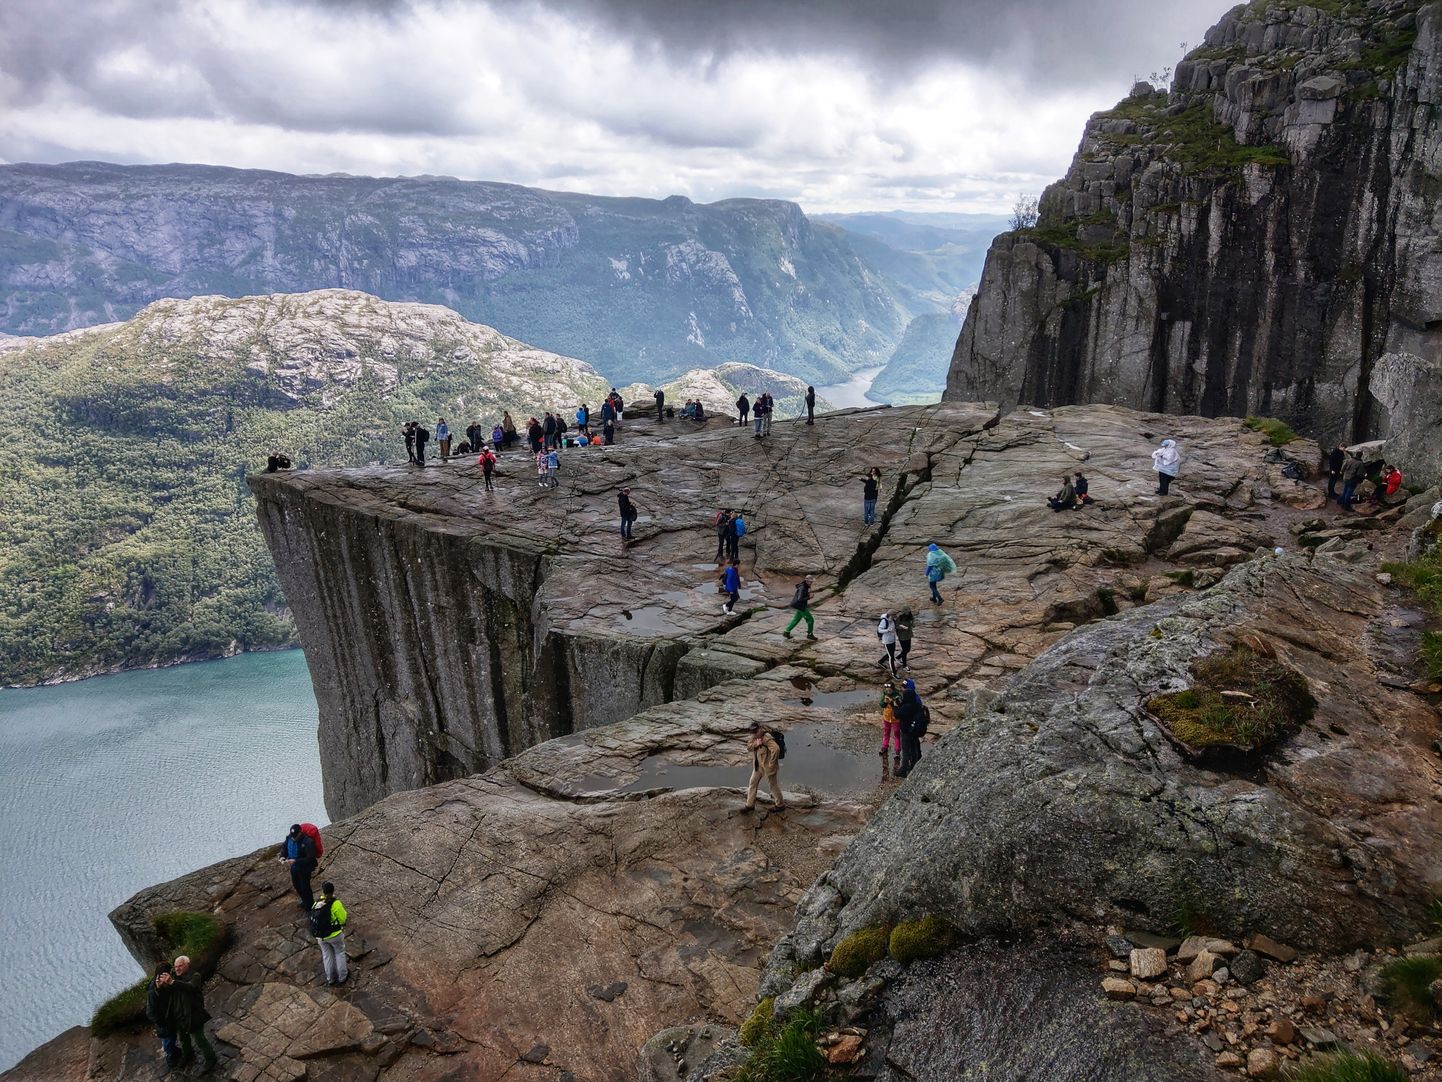 Norra fjordide kõige külastatavam kalju Preikestolen.